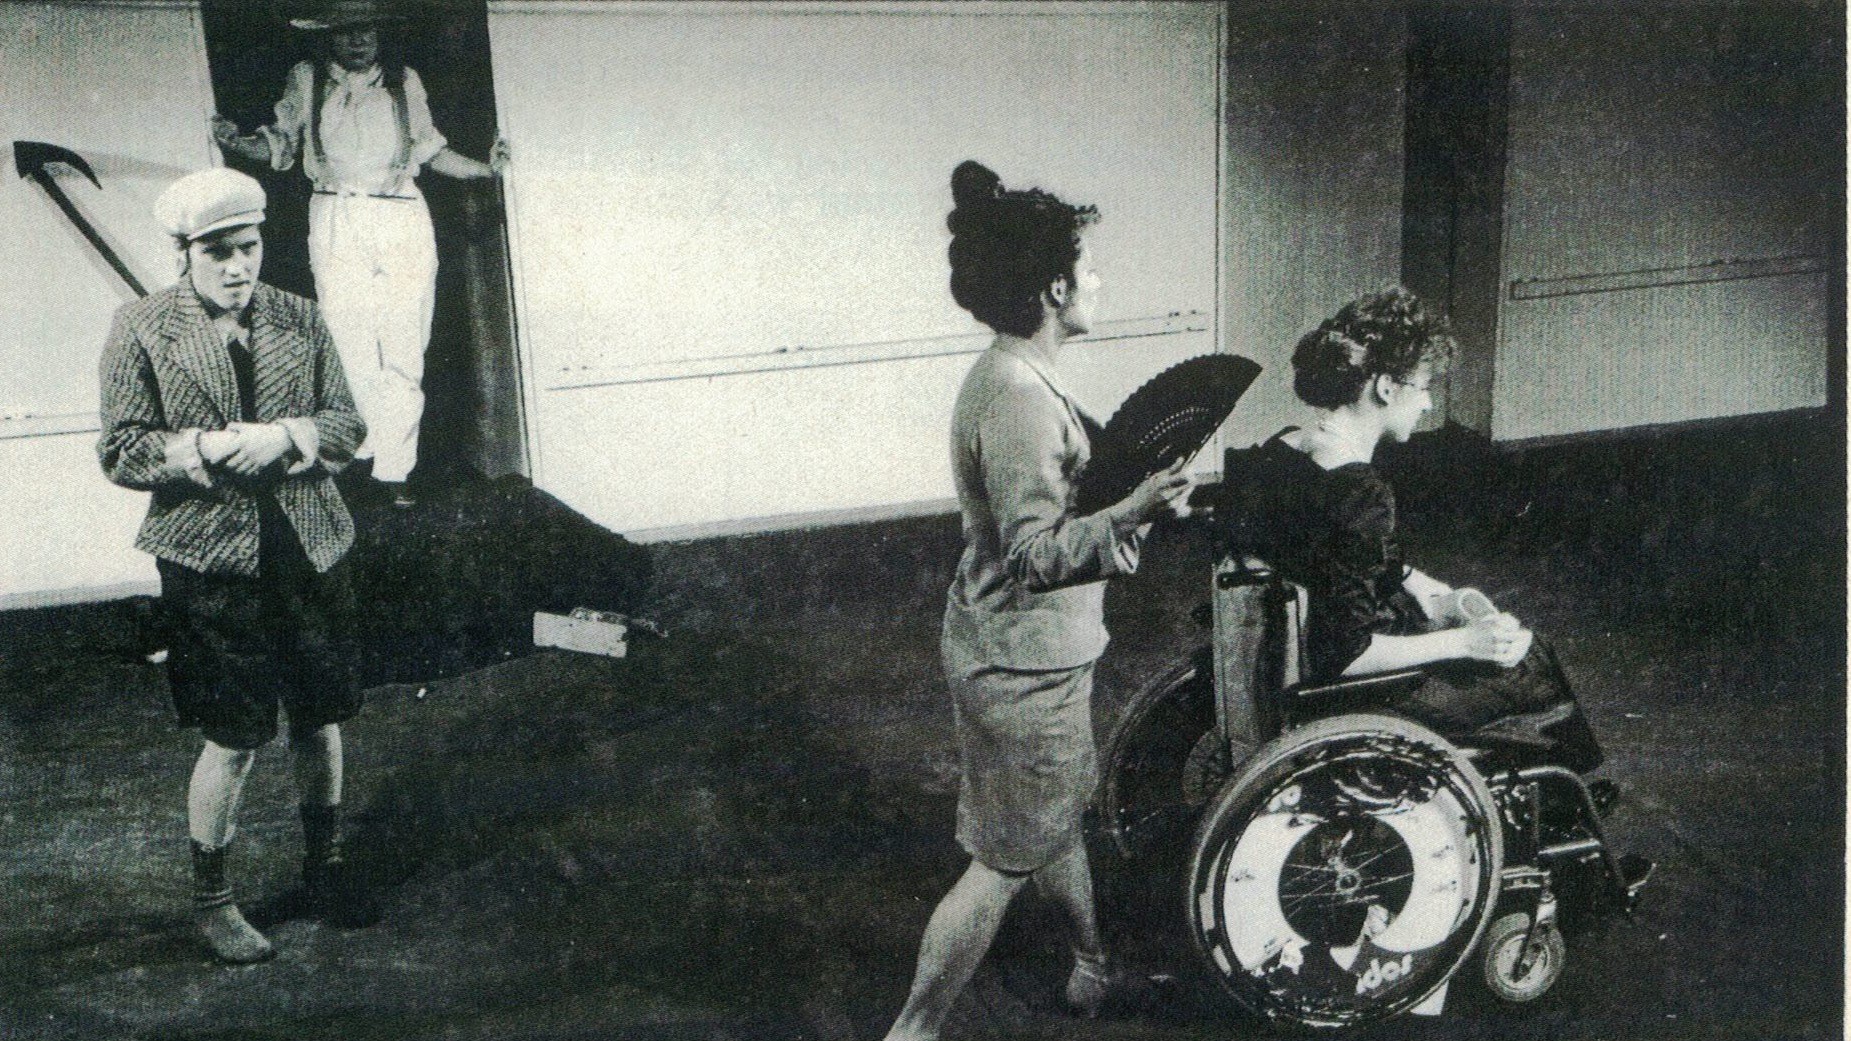 Szenenfoto aus einer Auffuehrung: Vier Menschen auf der Bühne. Im Vordergrund schiebt eine Frau mit Fächer eine andere Frau im Rollstuhl. Links daneben steht ein Junge mit fragender Geste. Im Hintergrund kommt jemand mit Strohhut aus einer Tür.